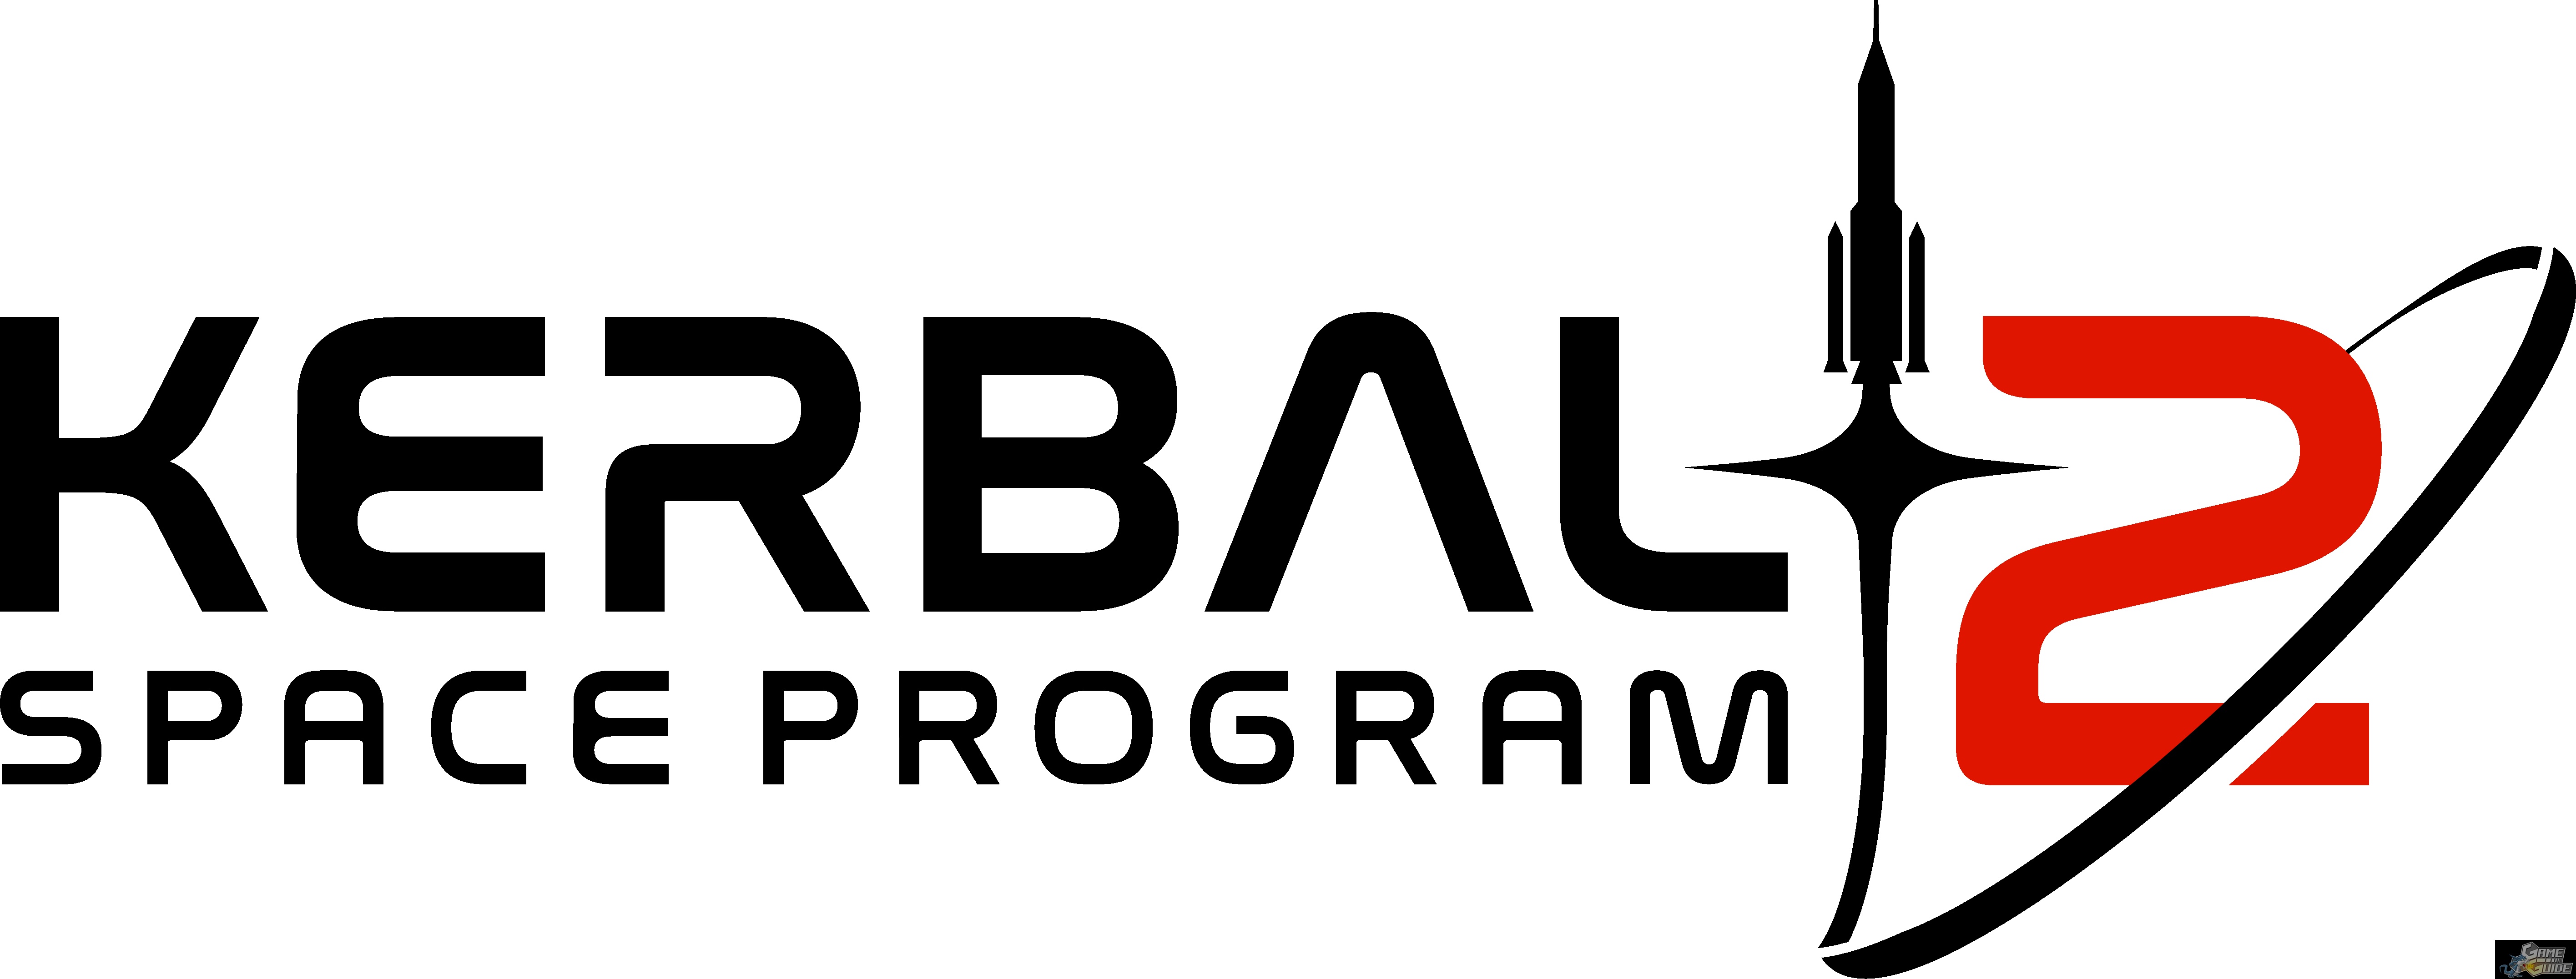 kerbal space program 2 developers